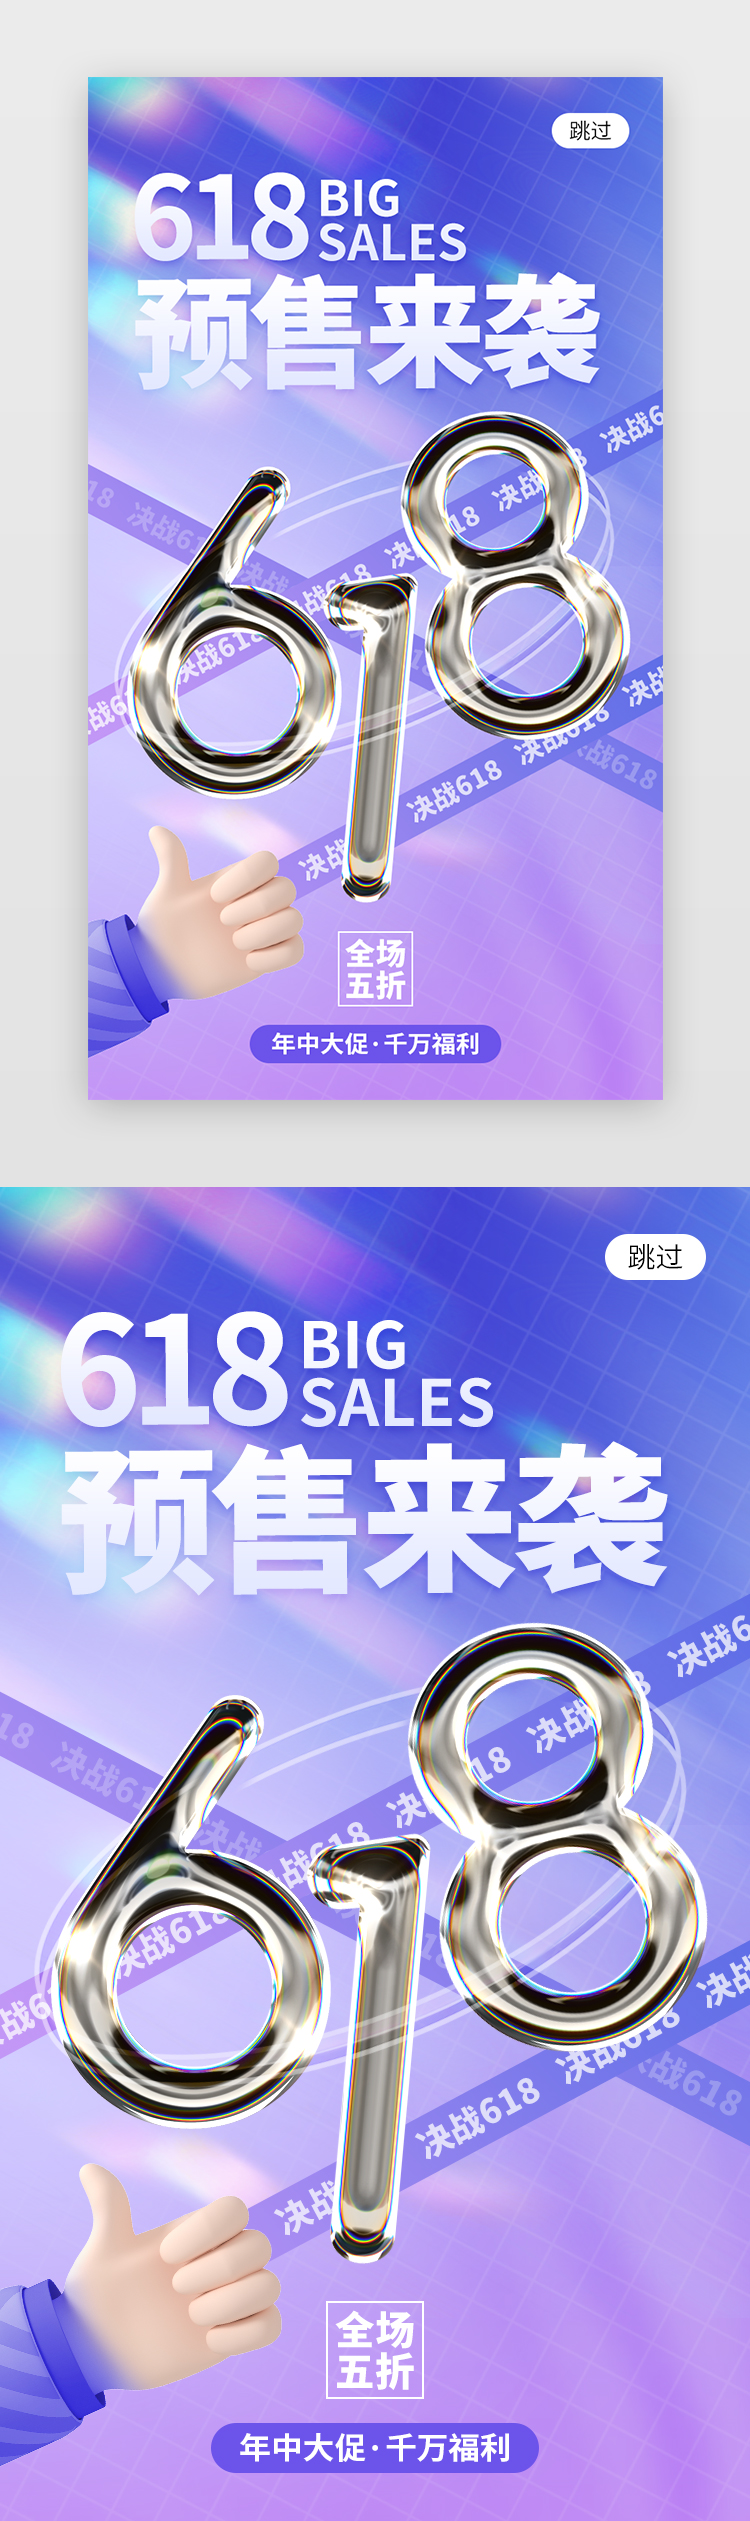 618预售来袭app闪屏创意蓝紫色金属数字图片